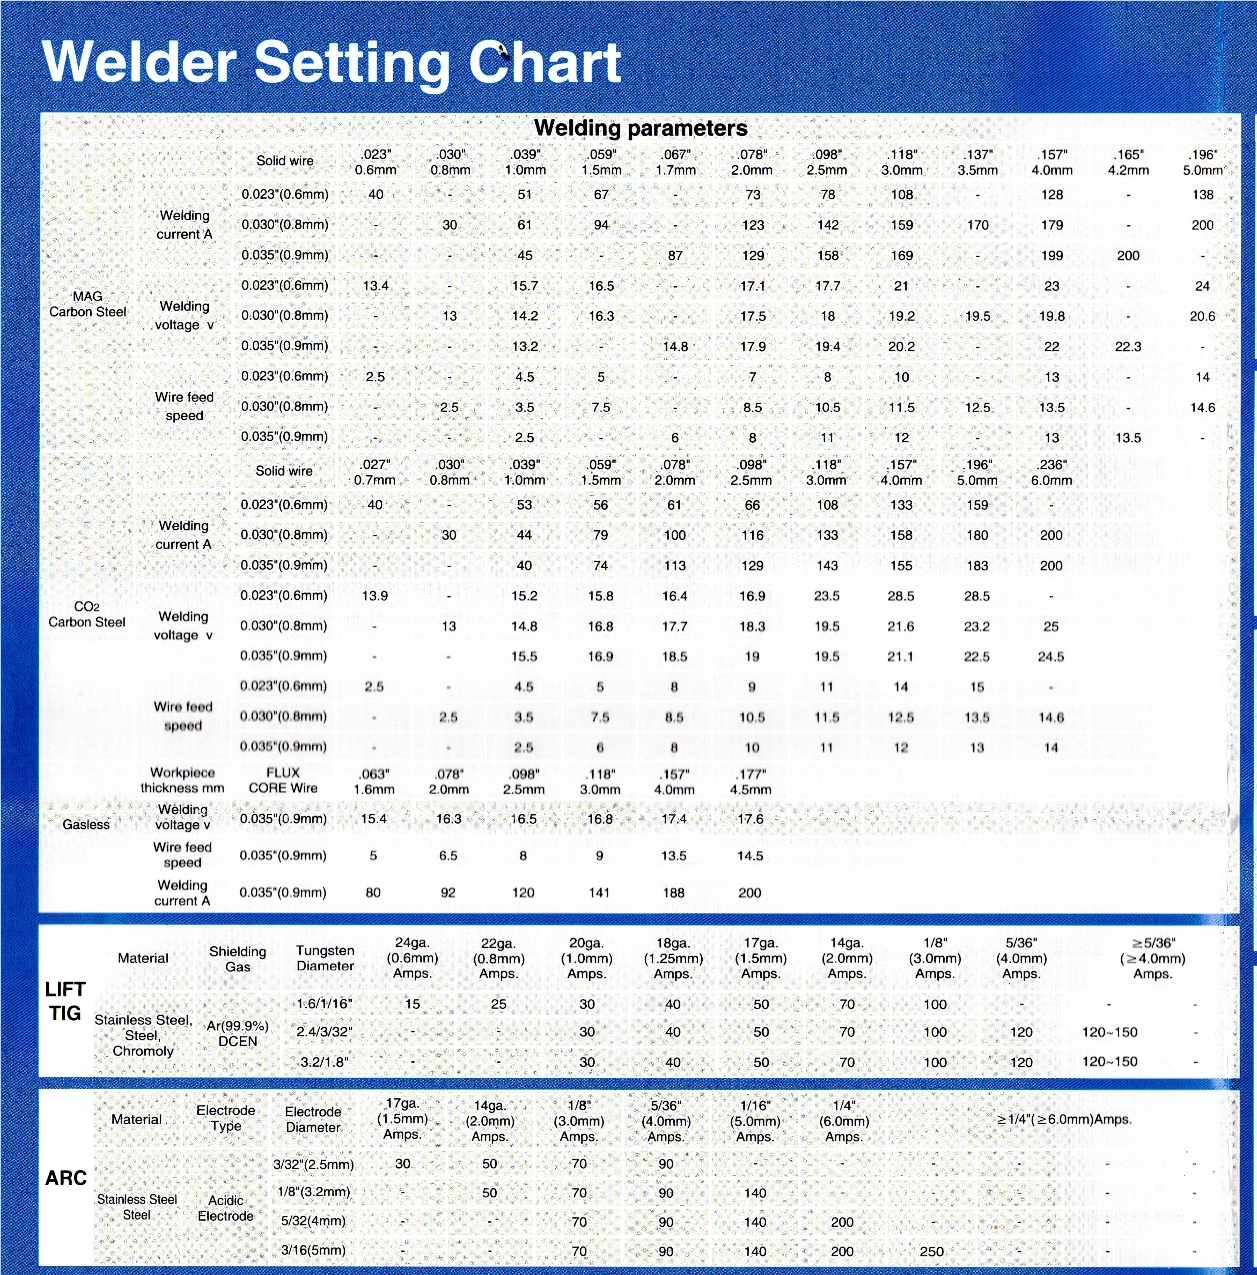 Welder Setting Chart sm.jpg